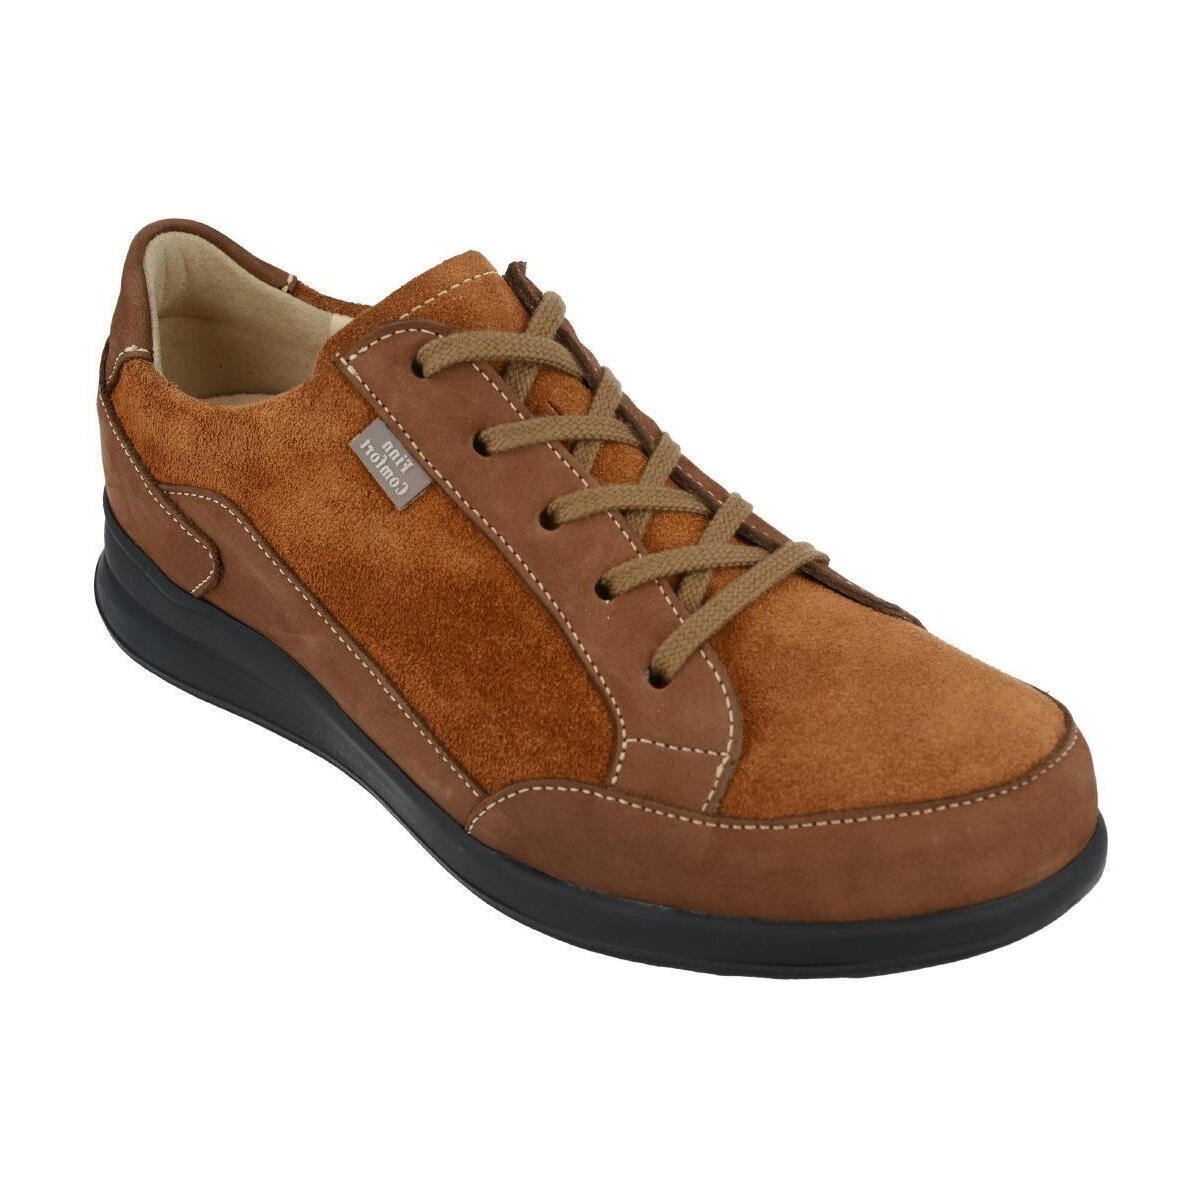 Sapatos Mulher Sapatilhas Finn Comfort 2286902498 Castanho